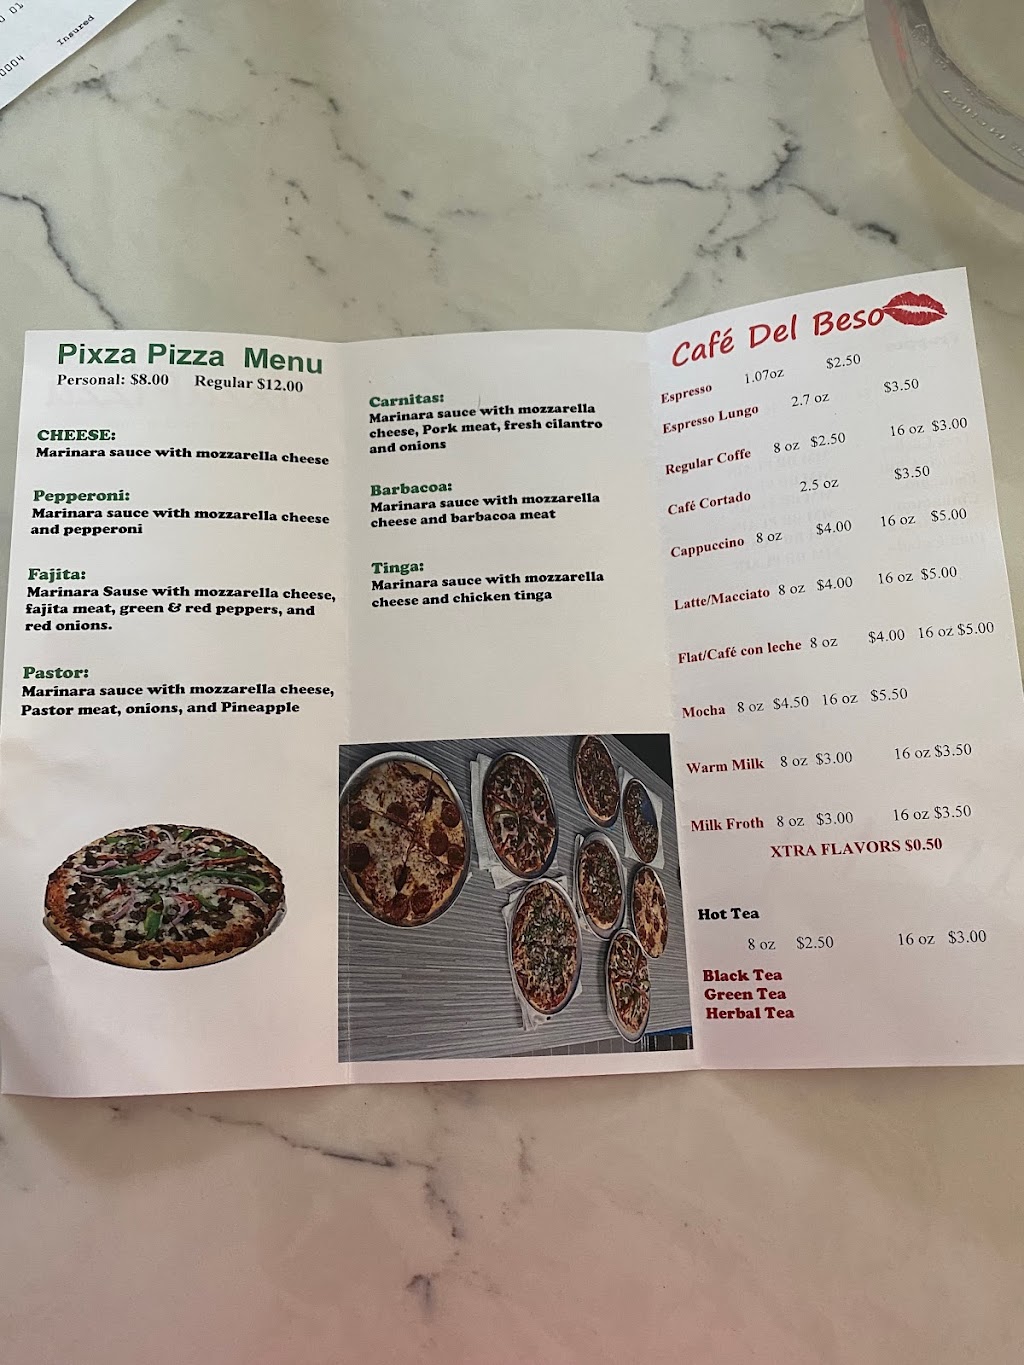 Pixza Pizza | restaurant | 6634 Harrisburg Blvd, Houston, TX 77011, USA | 7134850393 OR +1 713-485-0393